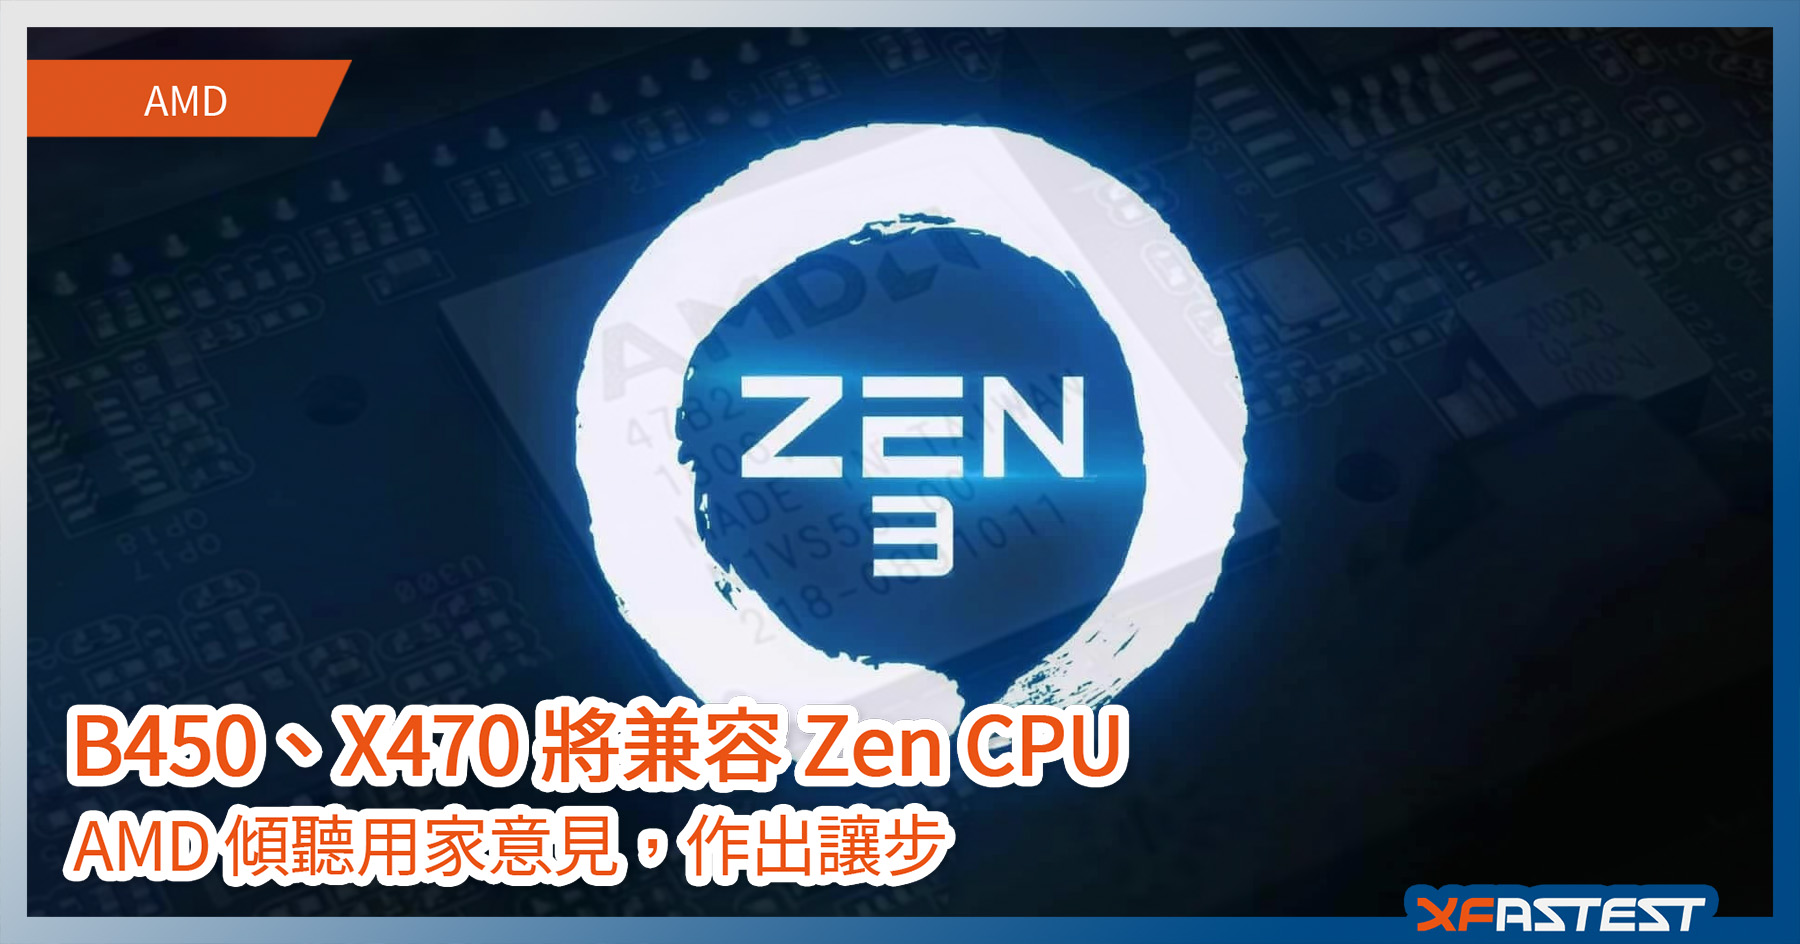 A Fans 福利時間 Amd 讓步下放400 系晶片組主機板對zen 3 Cpu 的支持 Xfastest Hong Kong